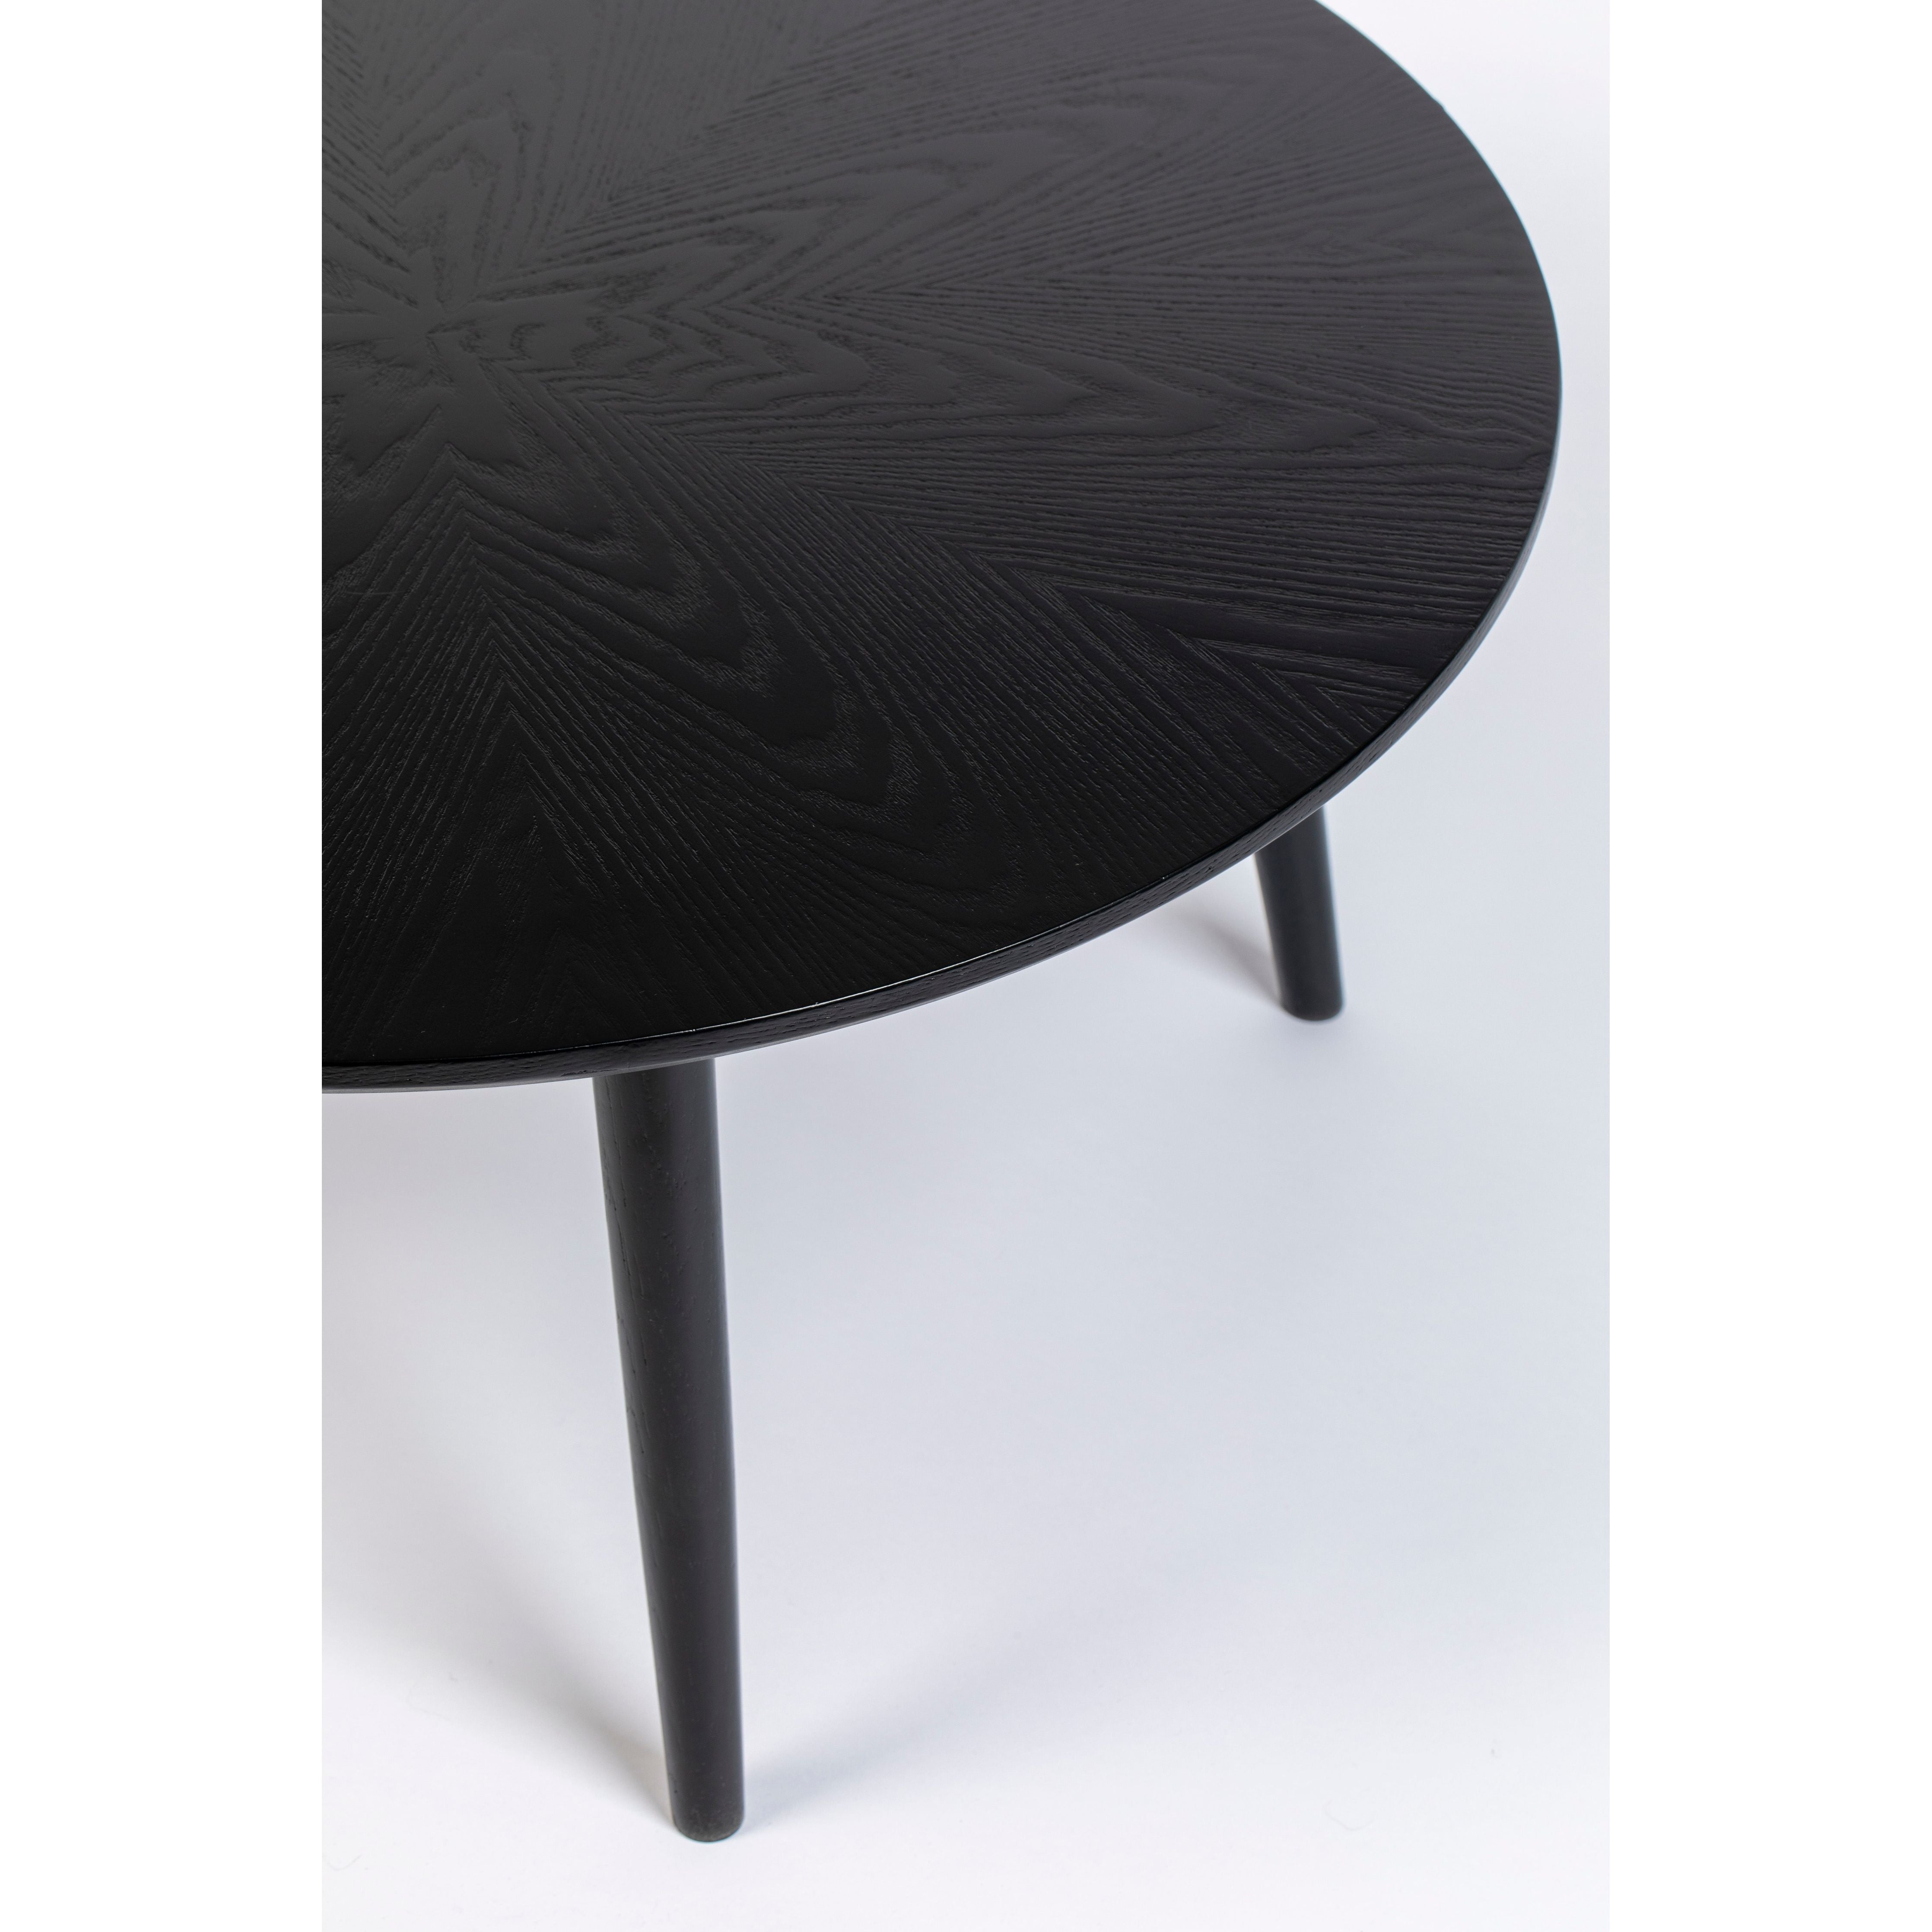 Table fabio 120' black